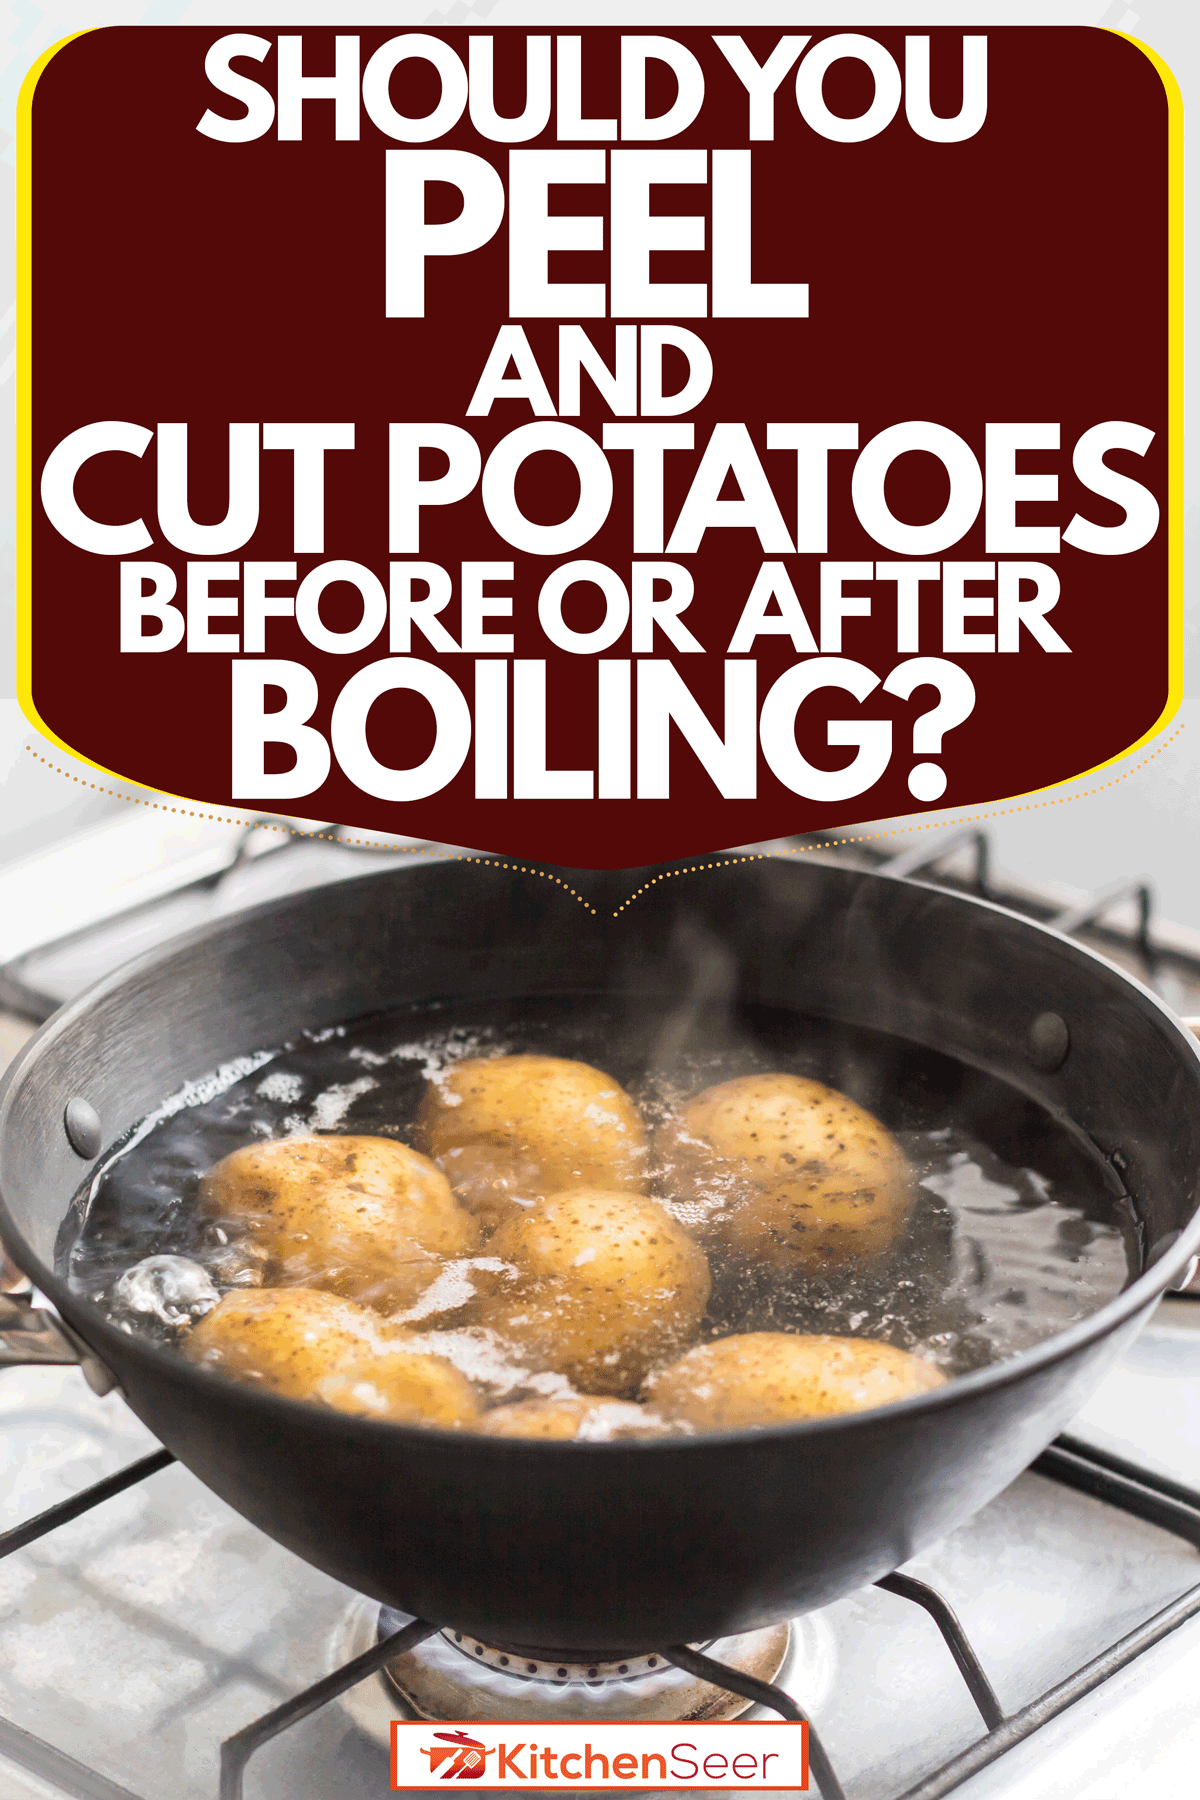 把土豆放在酱锅里，放在沸水下，你应该在煮土豆前削土豆皮还是煮土豆后切土豆?